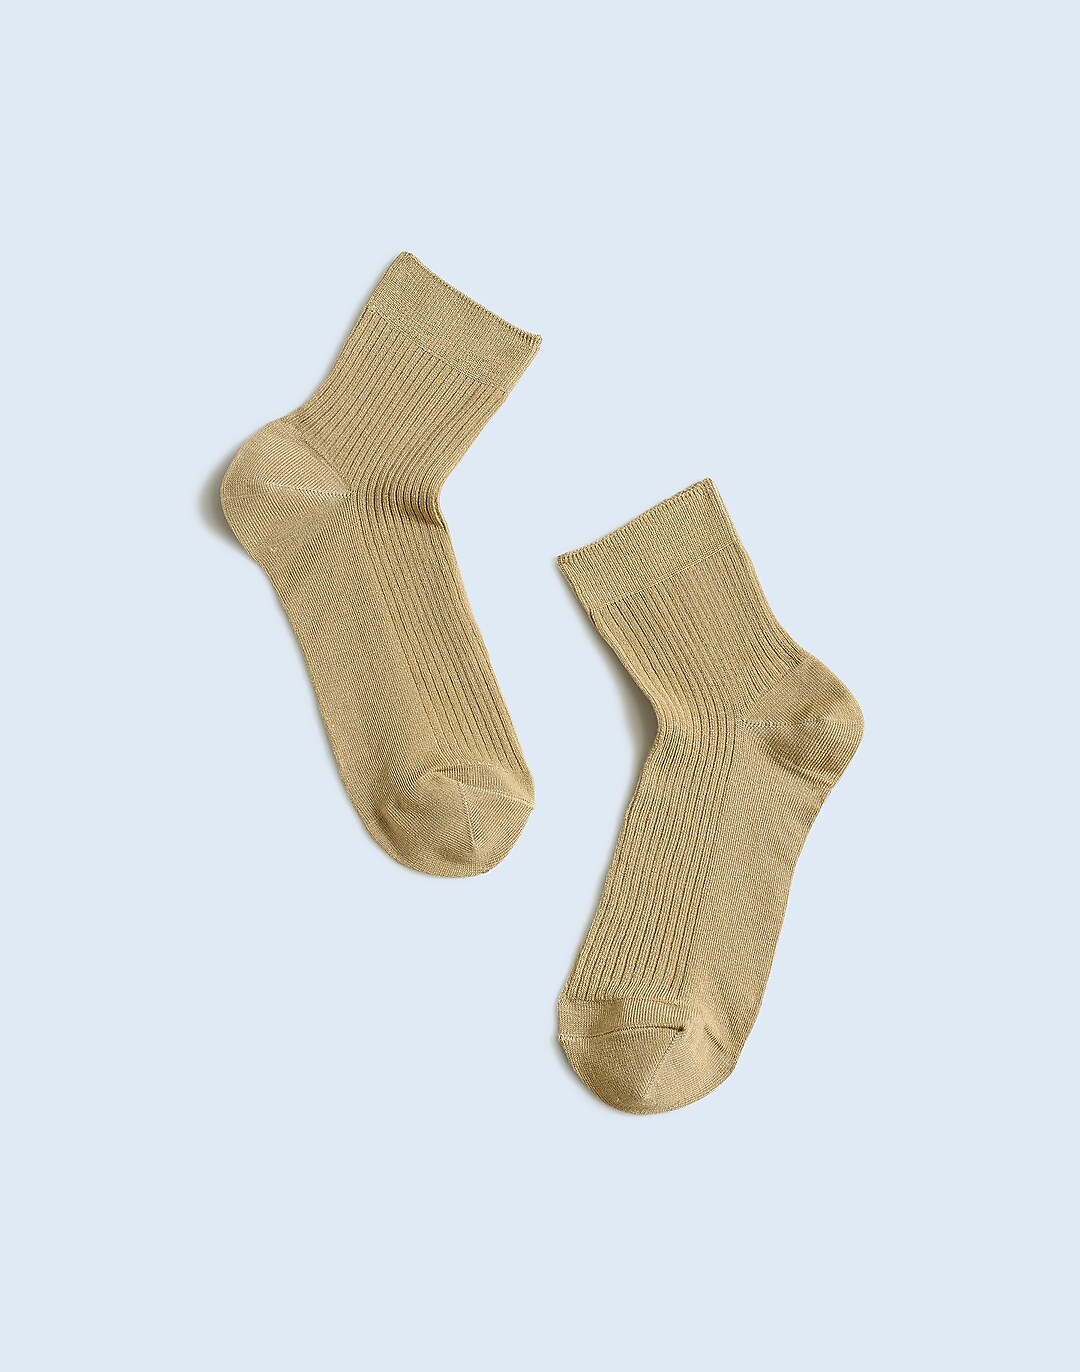 Men's Big/Tall Twist Ankle Slipper Socks